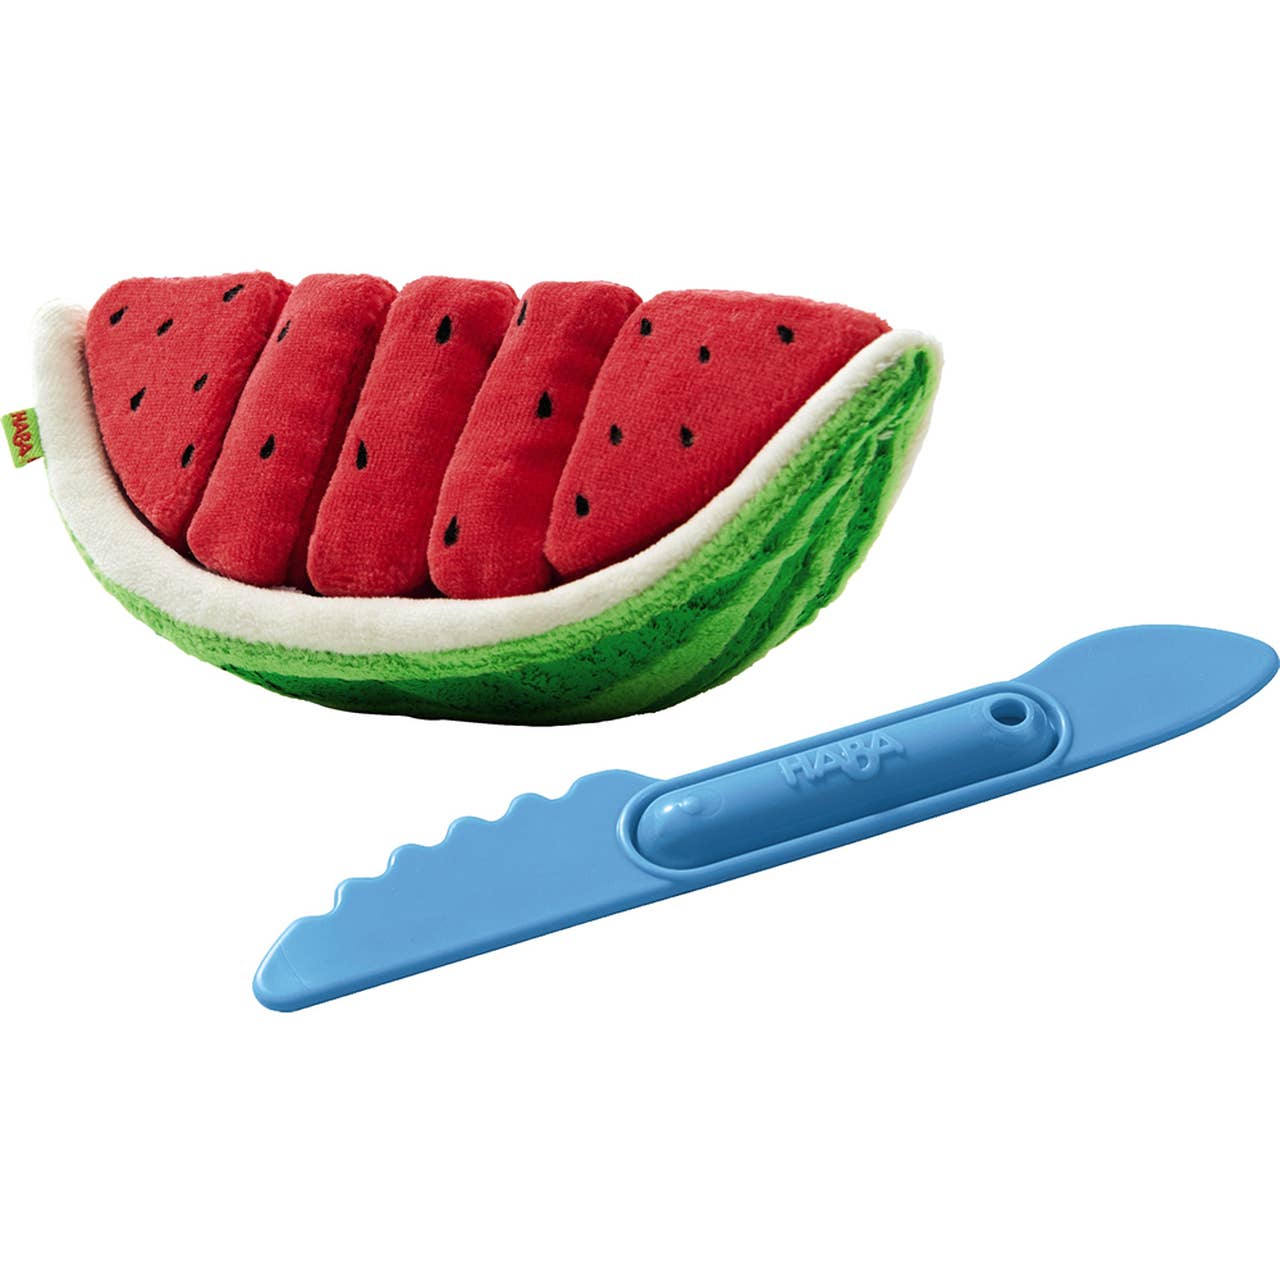 Biofino Watermelon - Einstein's Attic